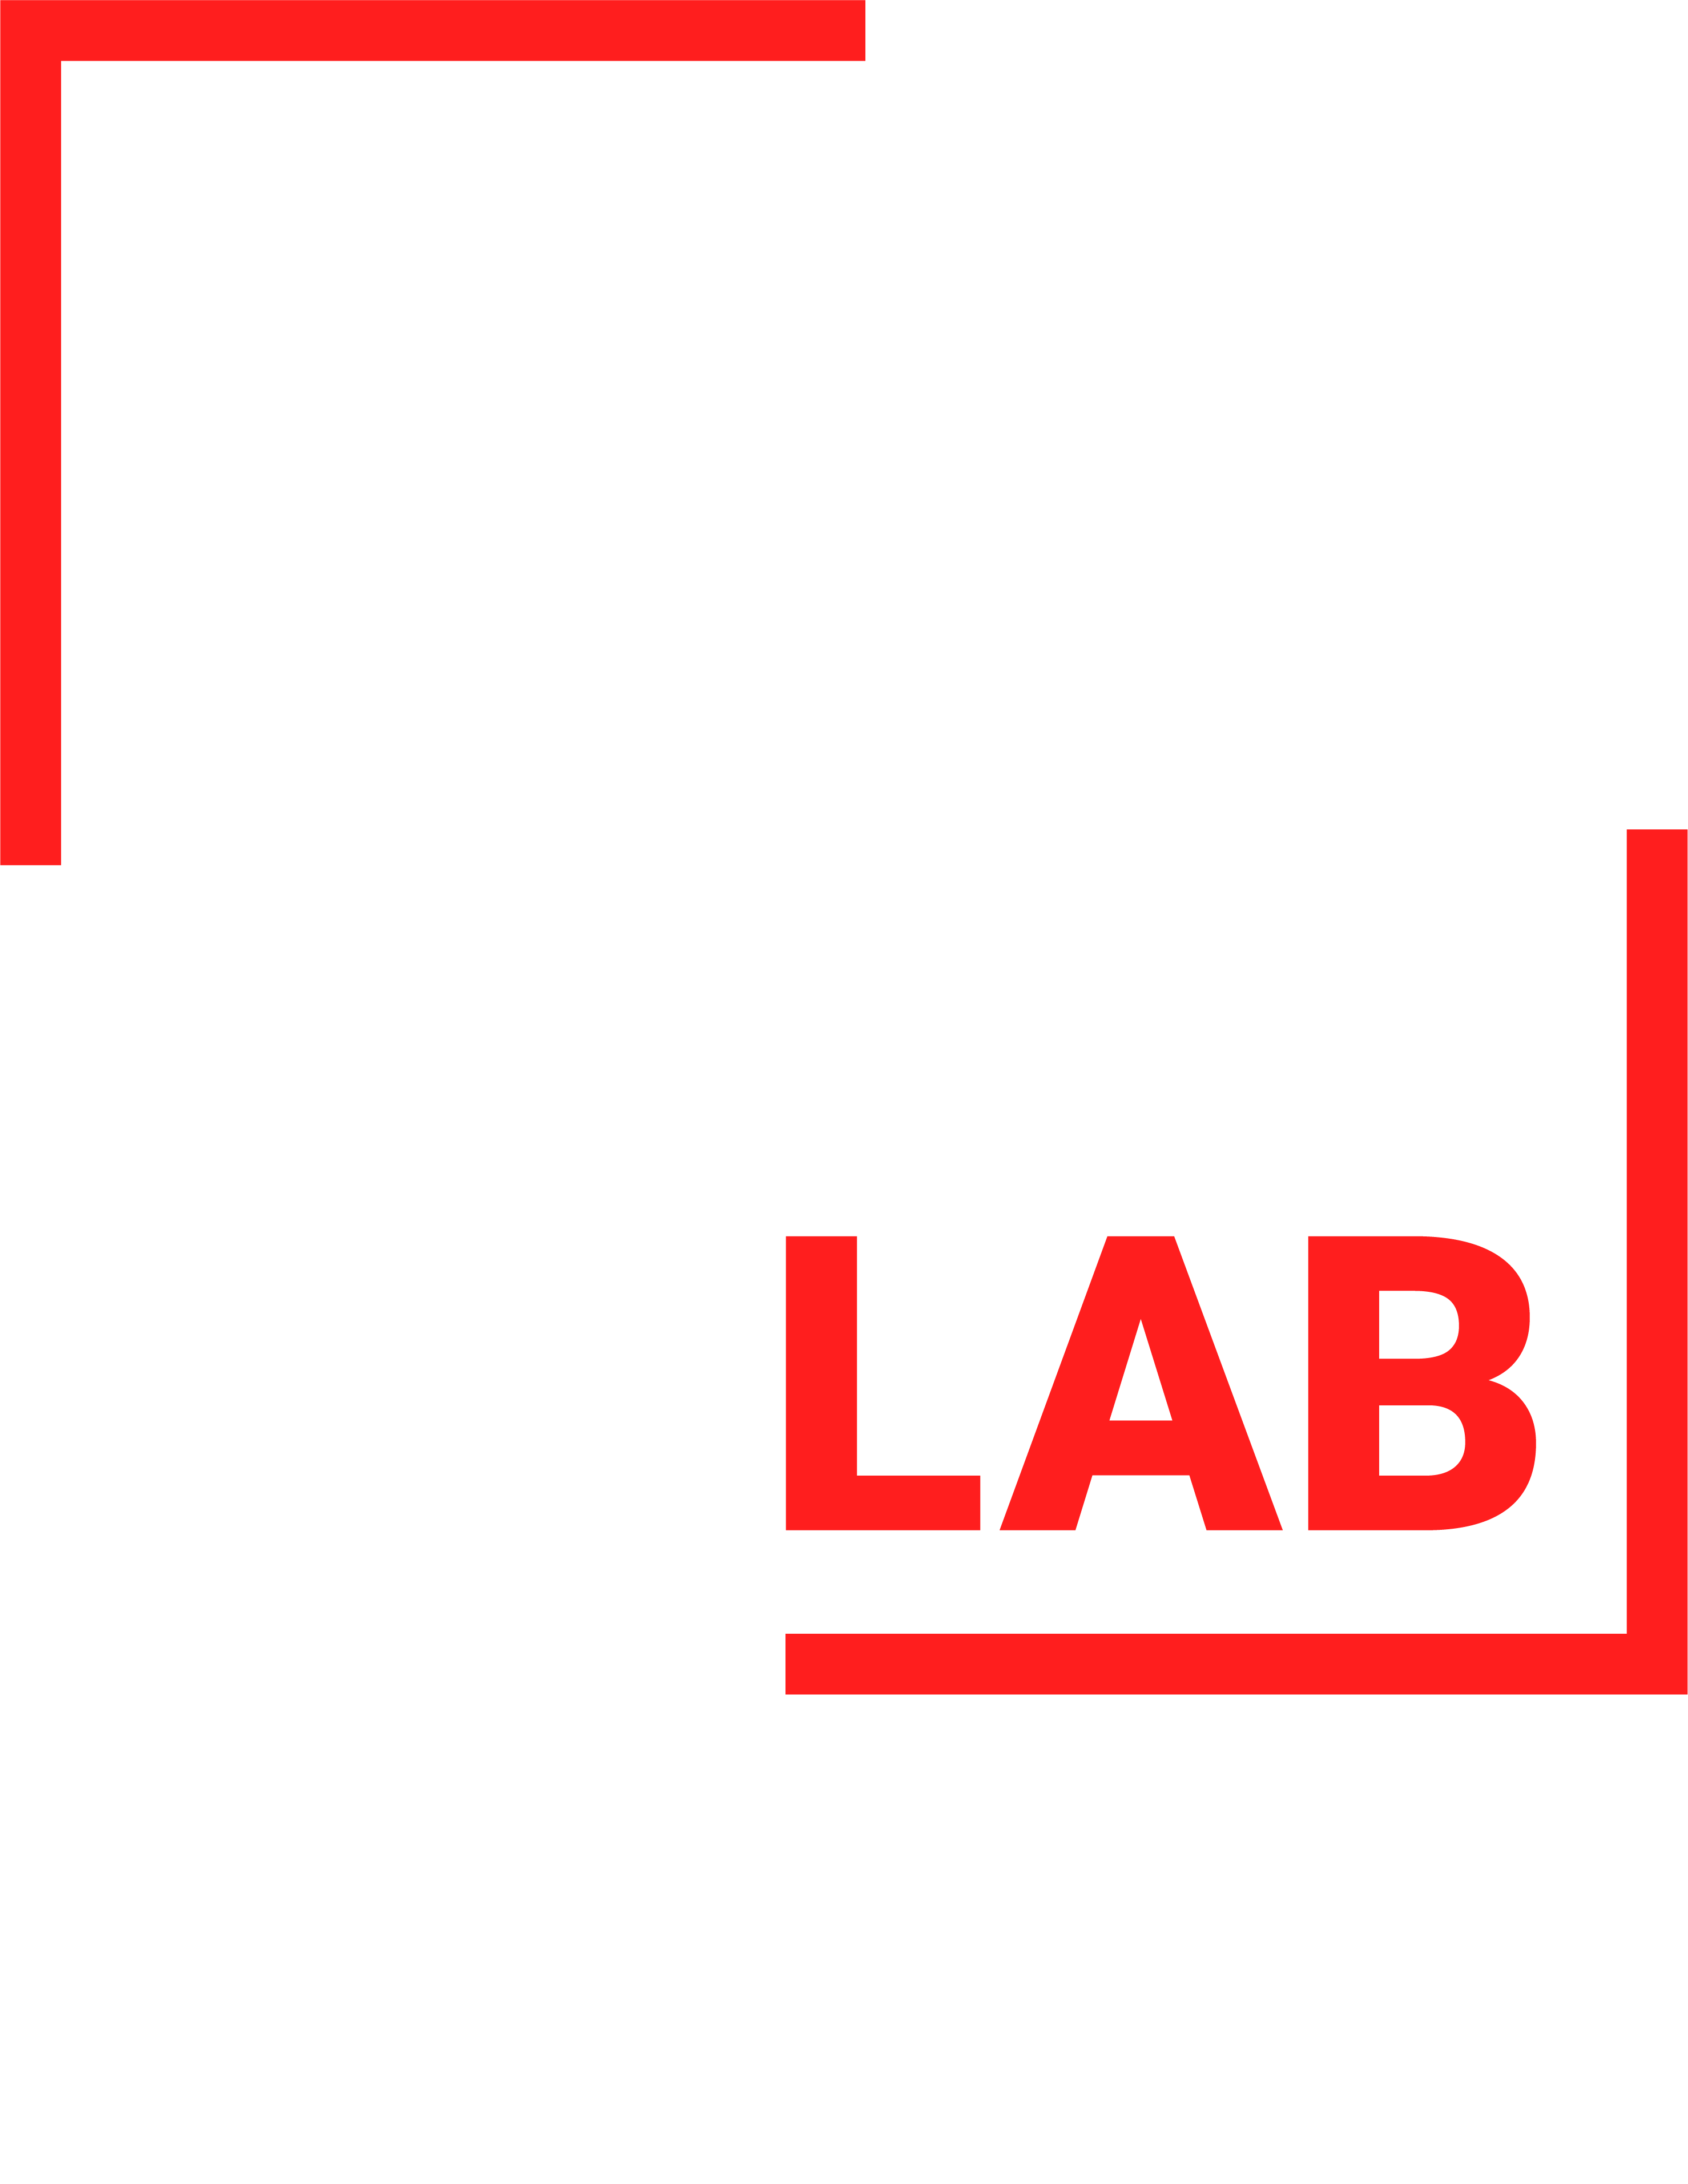 Irish Institute of Digital Business